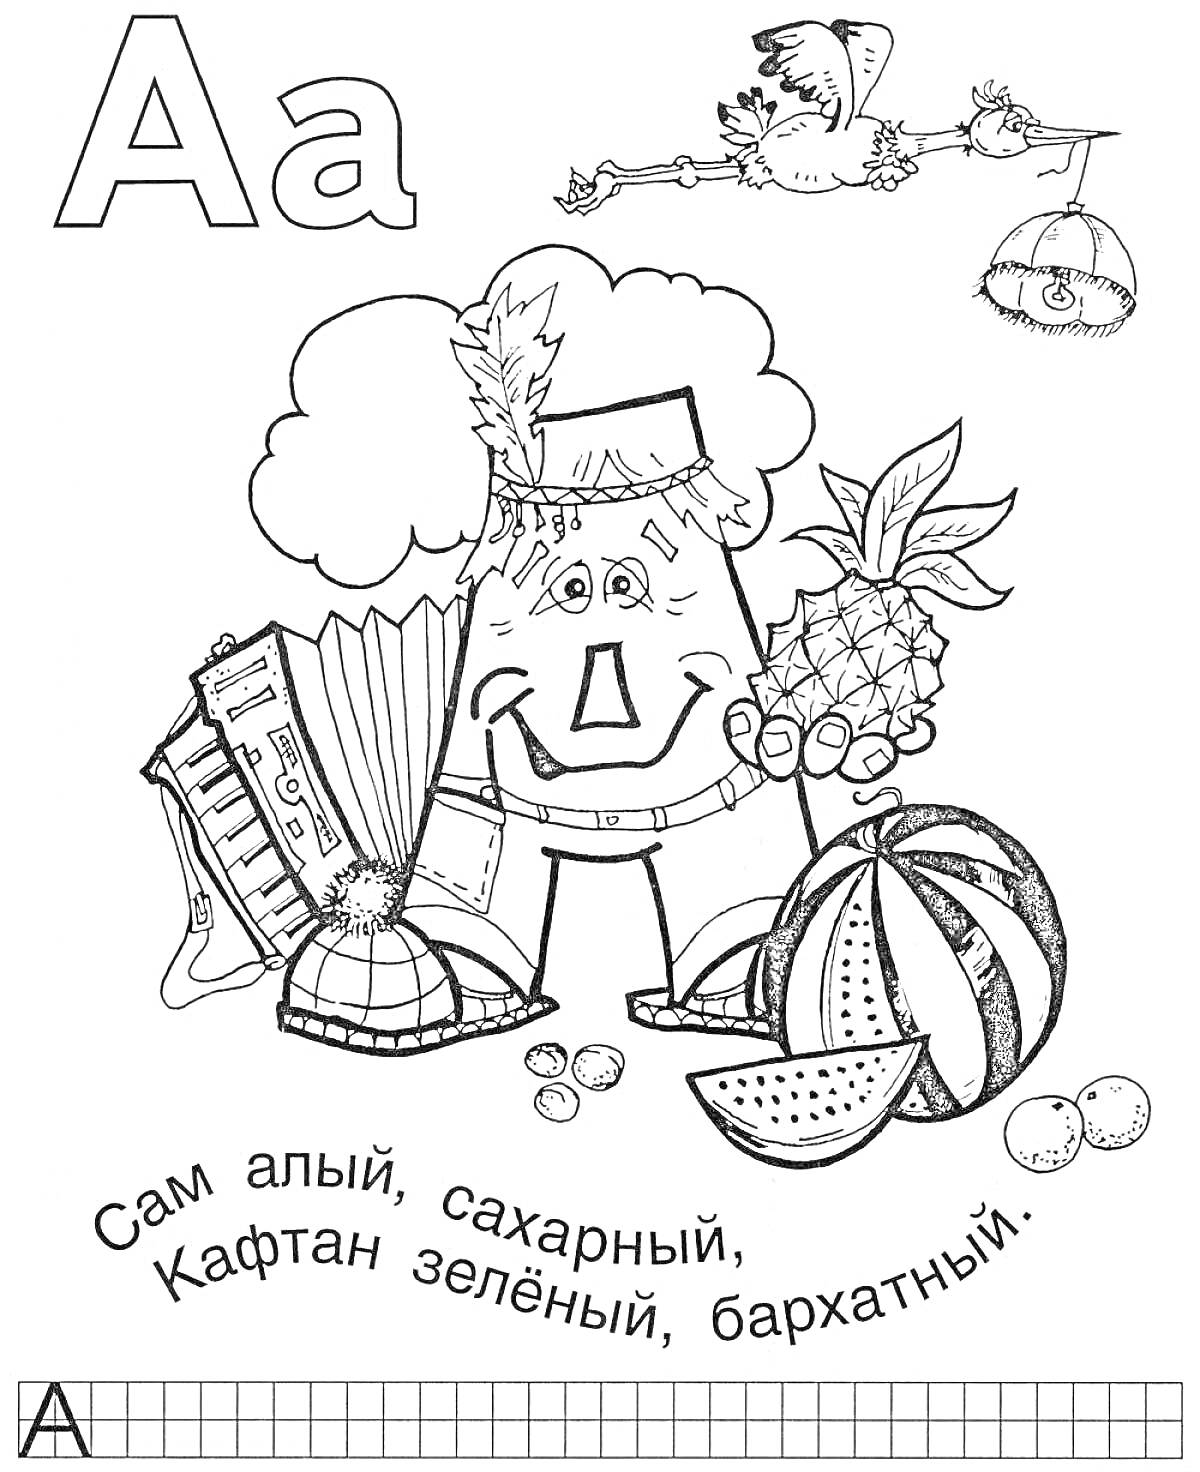 Раскраска Буква А с изображением арбуза, ананаса, аккордеона и других предметов, на фоне азбуки для детей